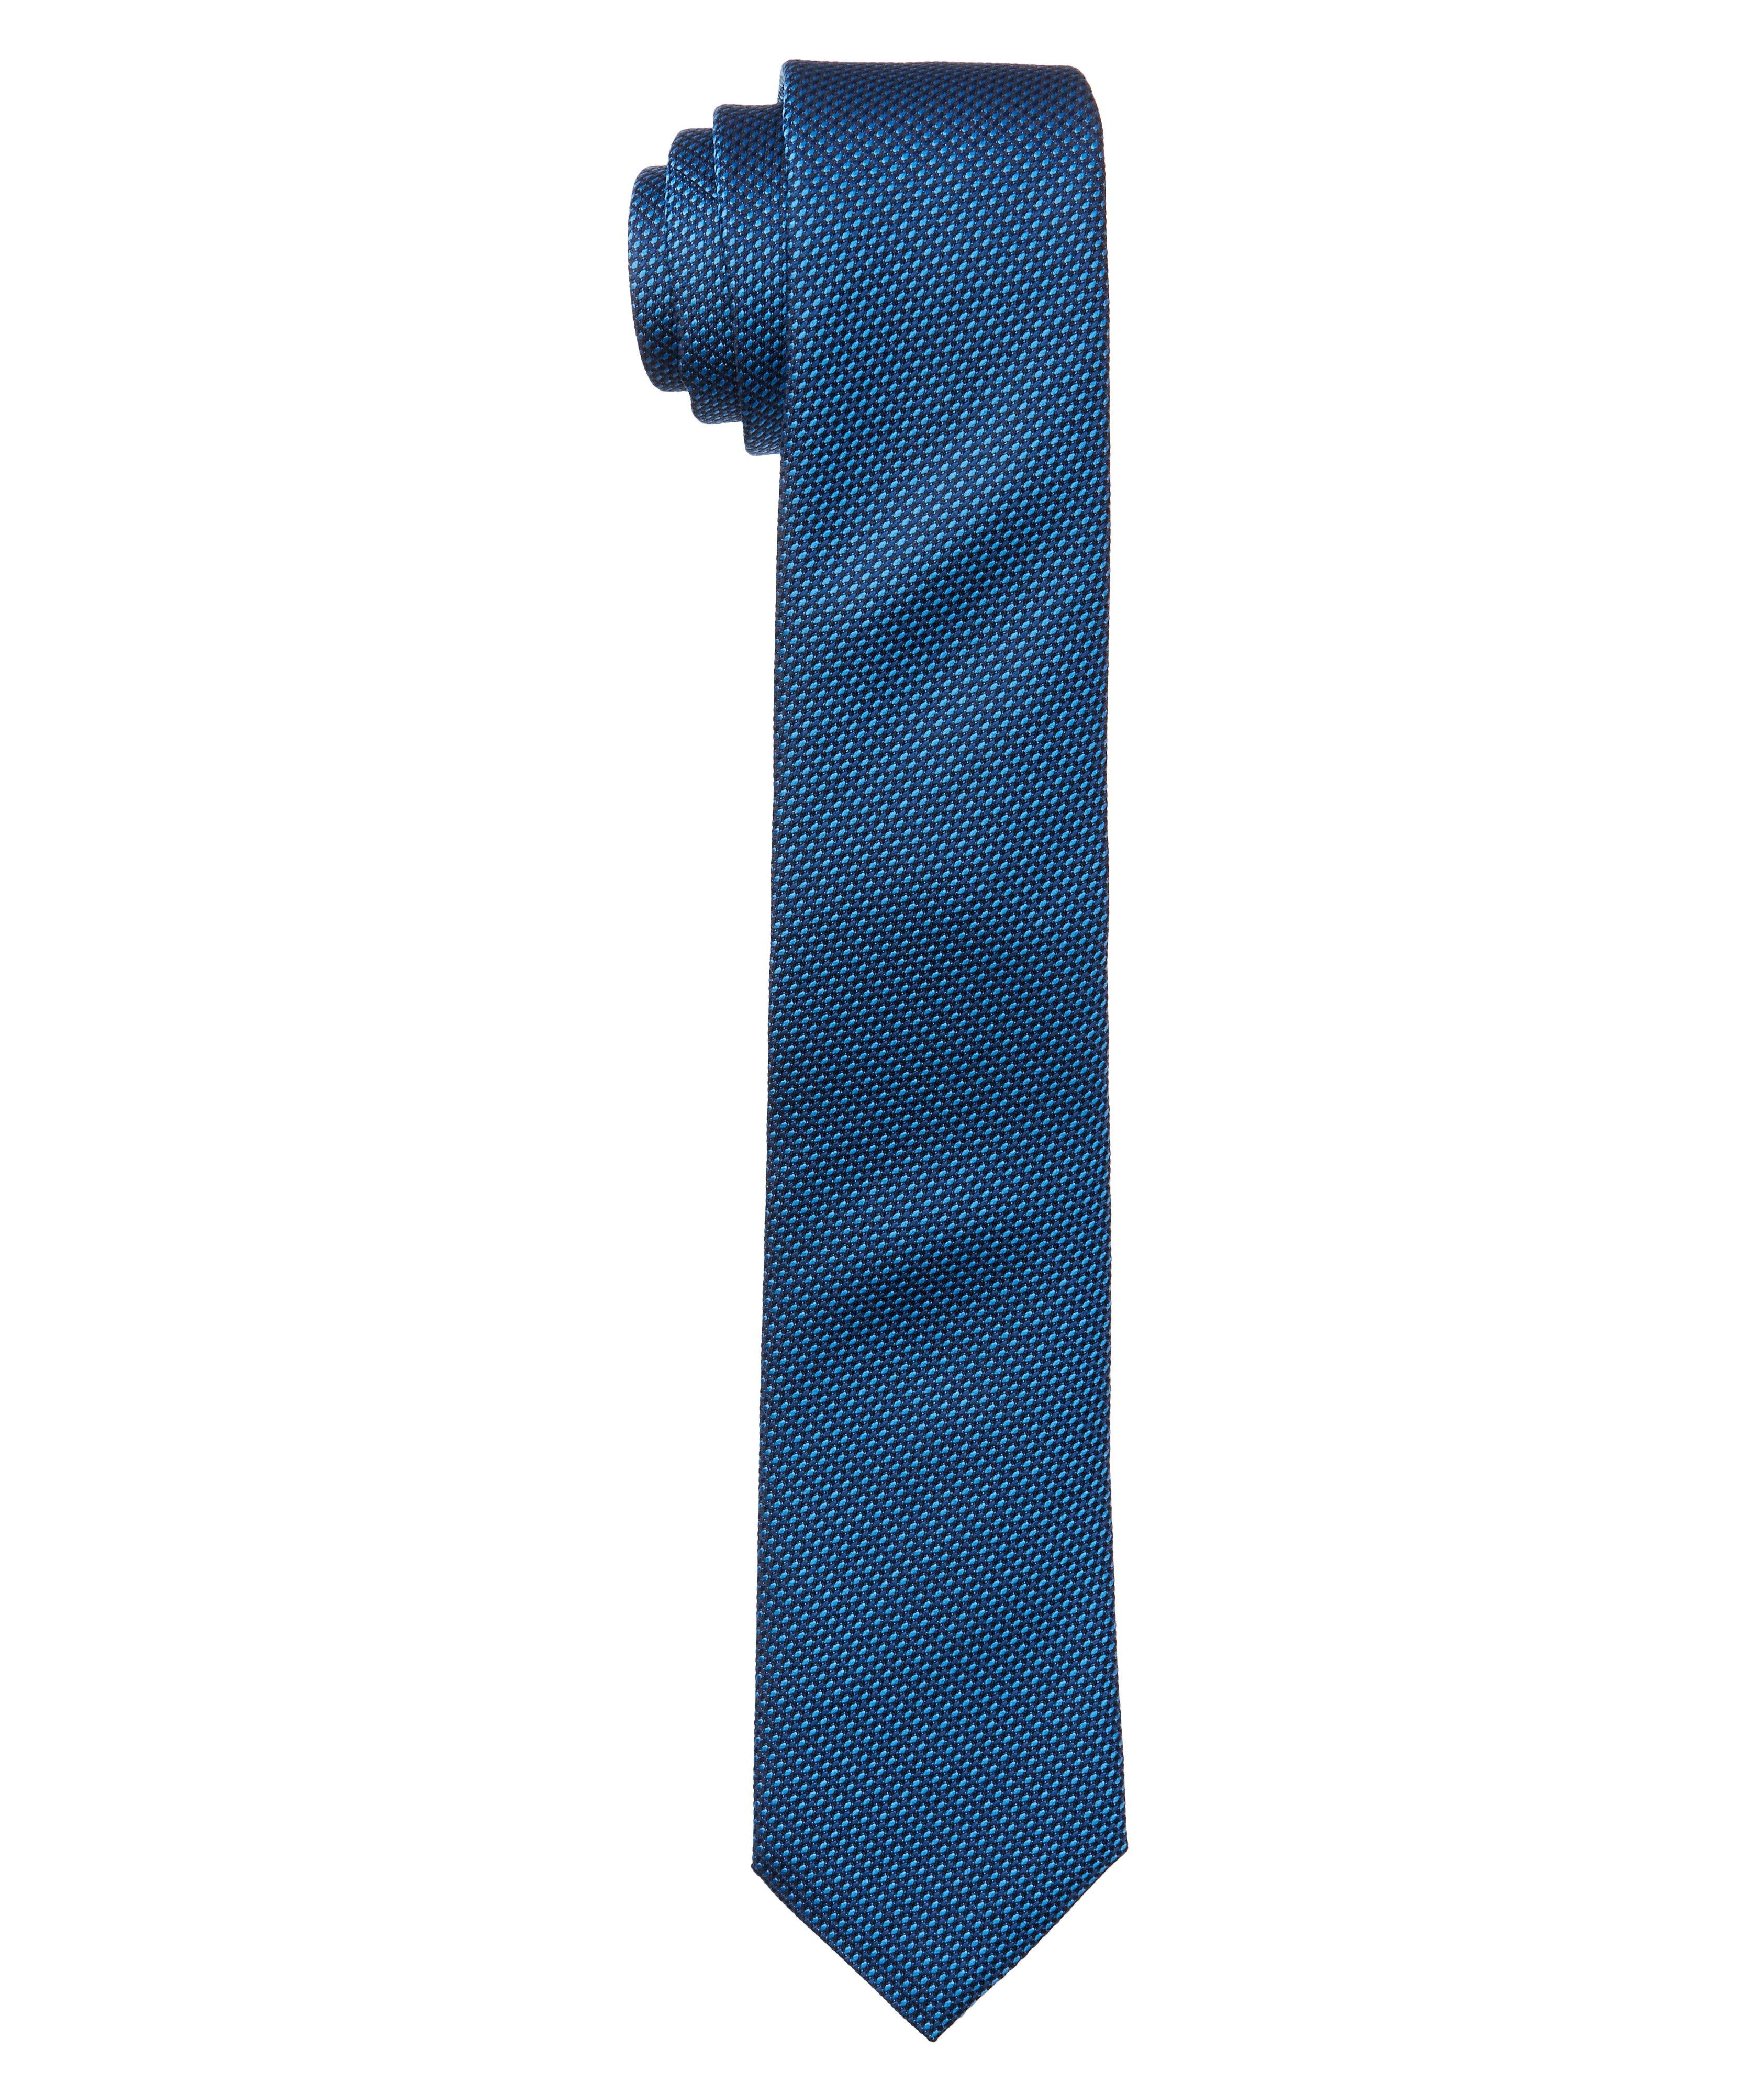 Cravate de voyage imprimée en soie image 0